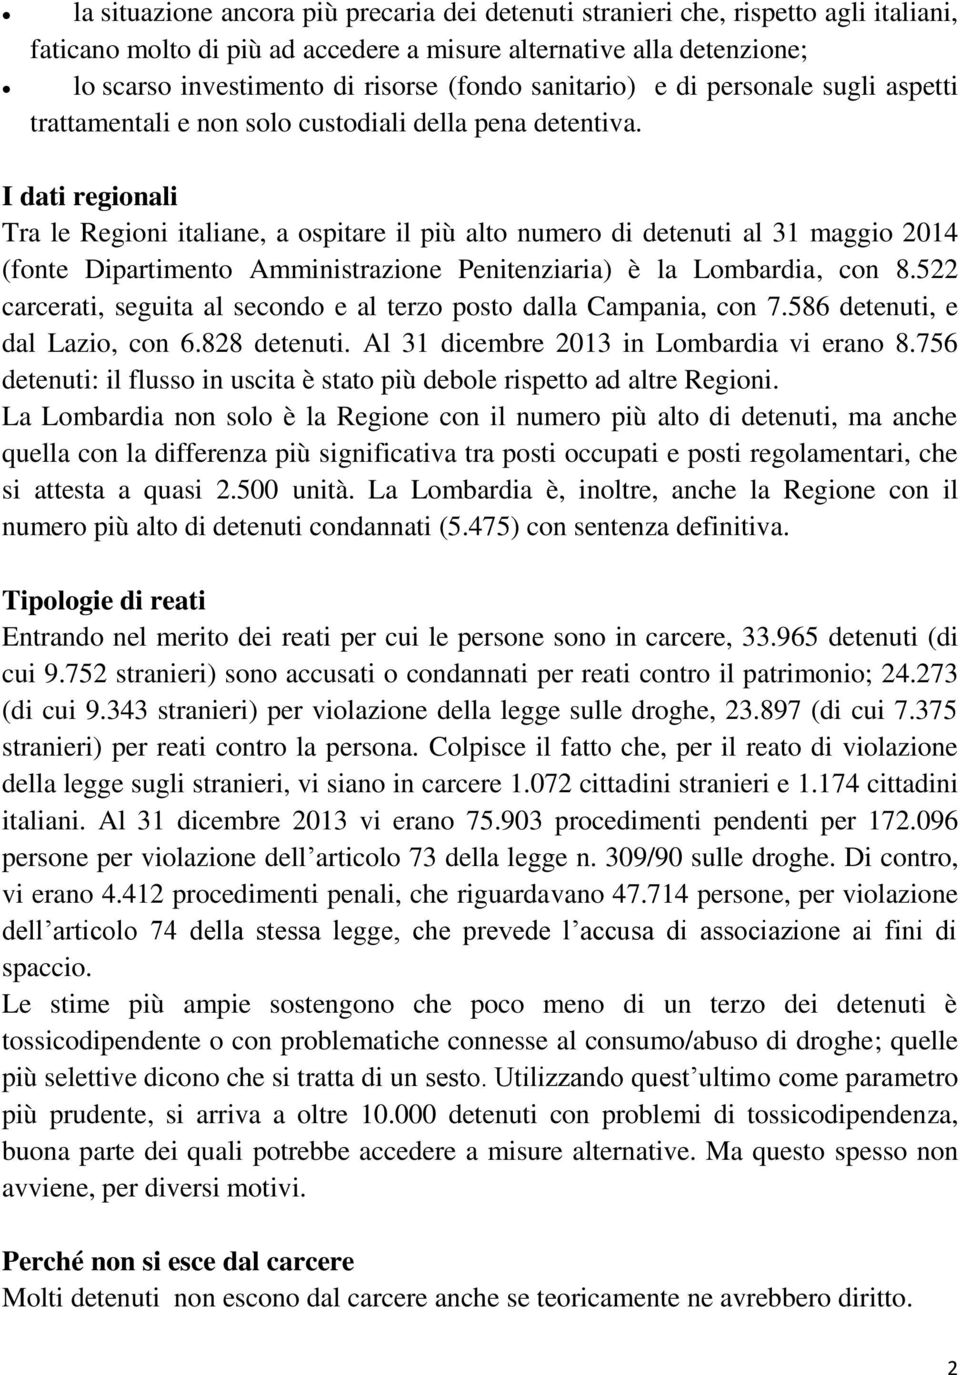 I dati regionali Tra le Regioni italiane, a ospitare il più alto numero di detenuti al 31 maggio 2014 (fonte Dipartimento Amministrazione Penitenziaria) è la Lombardia, con 8.